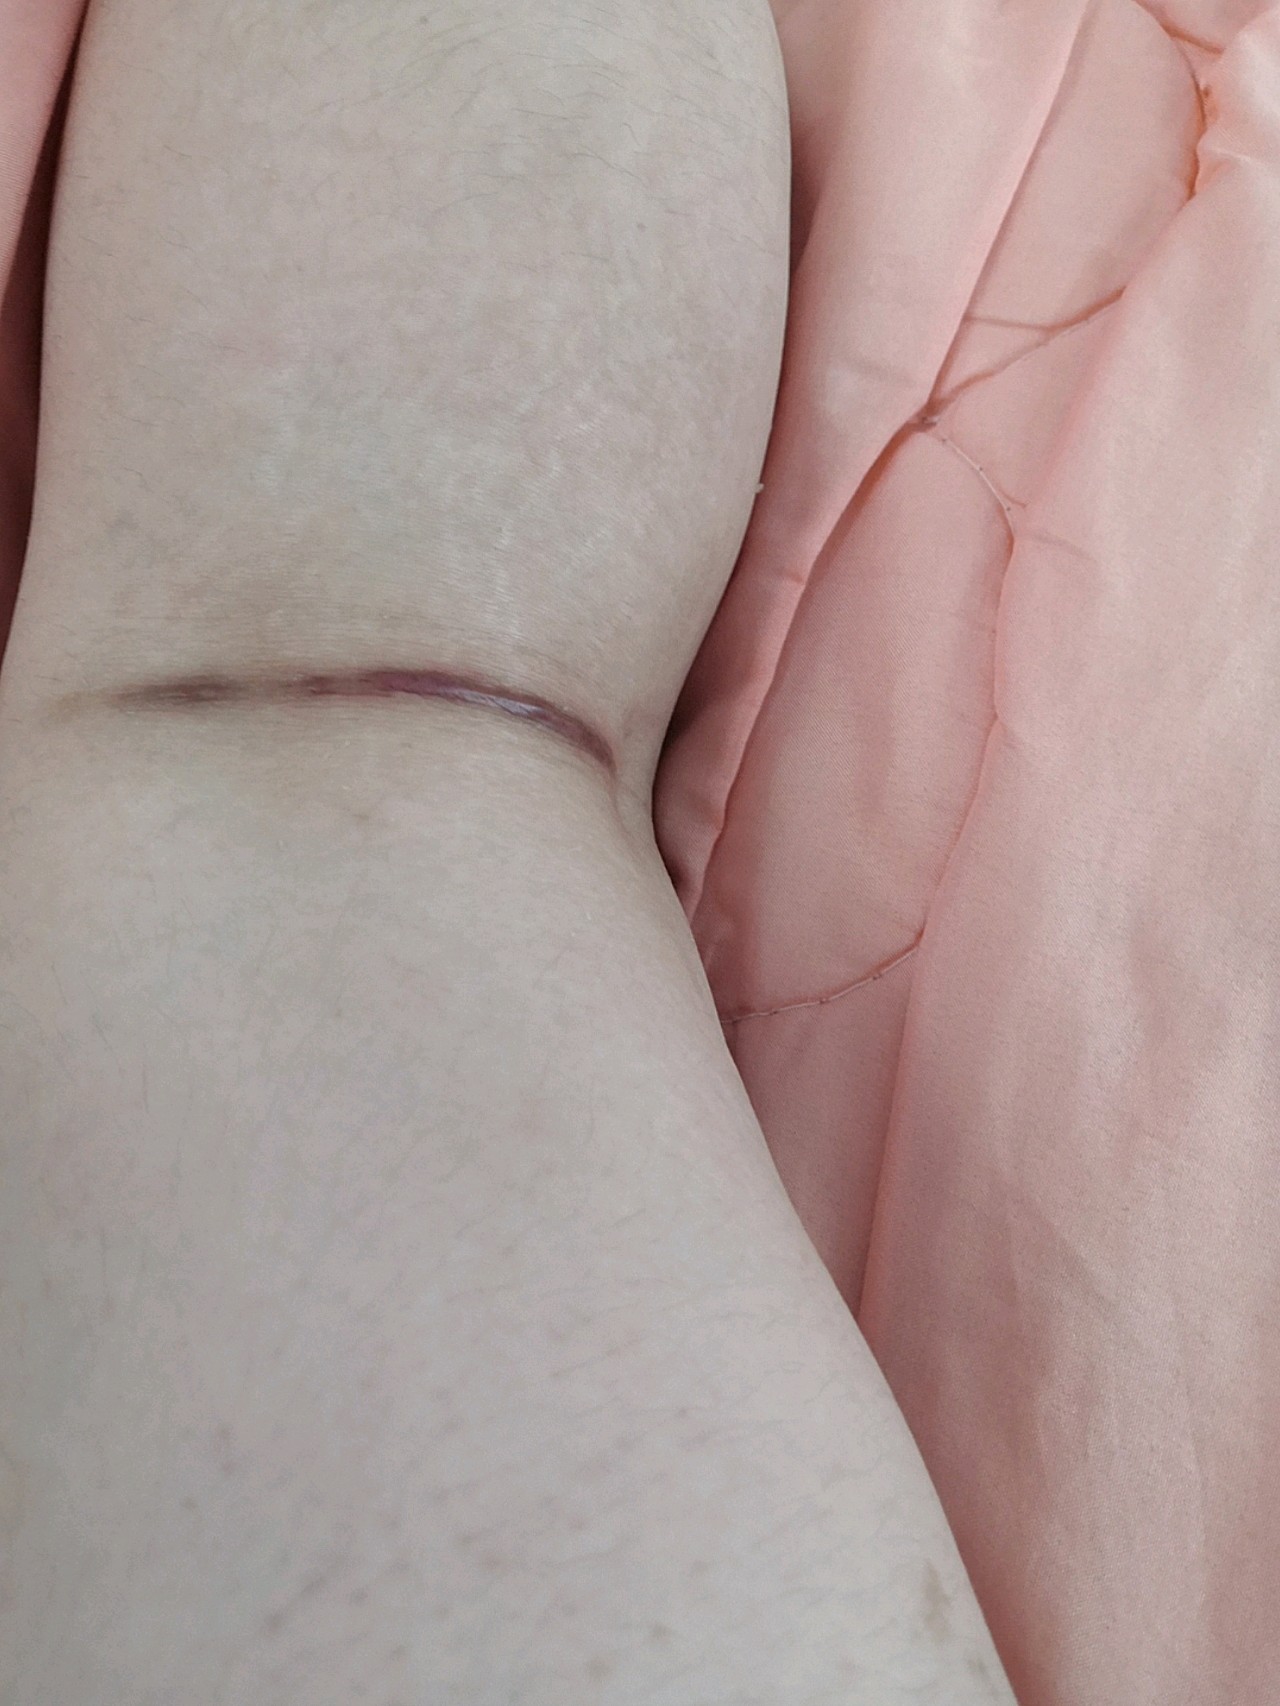 大腿抽脂已经快五个月了,疤痕依然丝毫没有退去,就在膝盖后侧,特别深